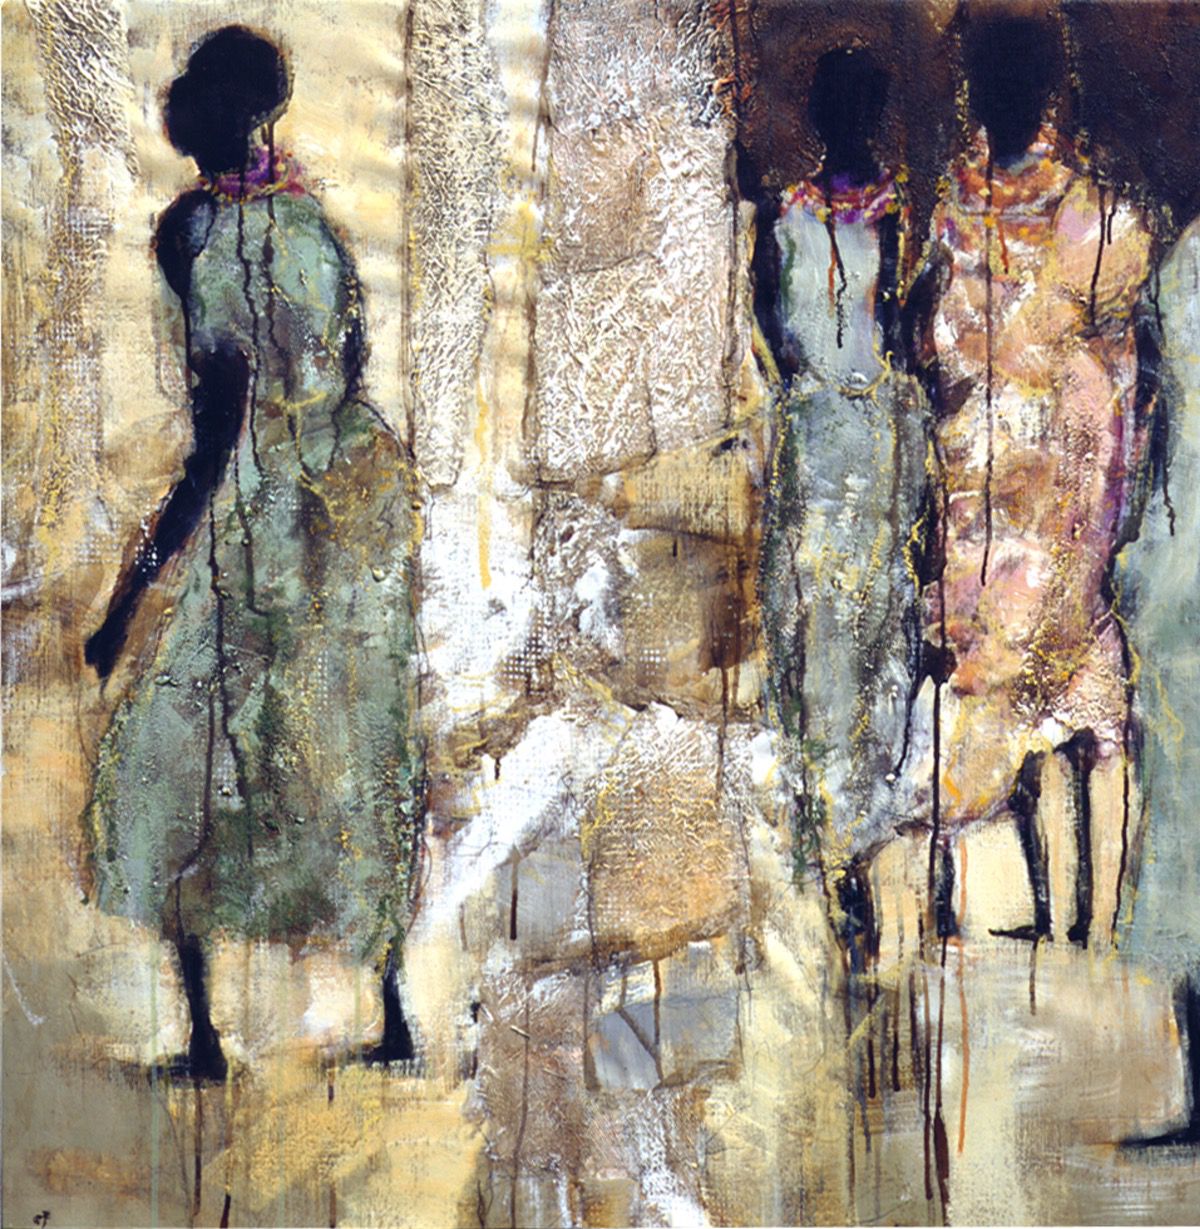 ”Masai” 2002, 100 x 100 cm. Akryl og olie på lærred. (Carsten Frank nr. 677) Sold